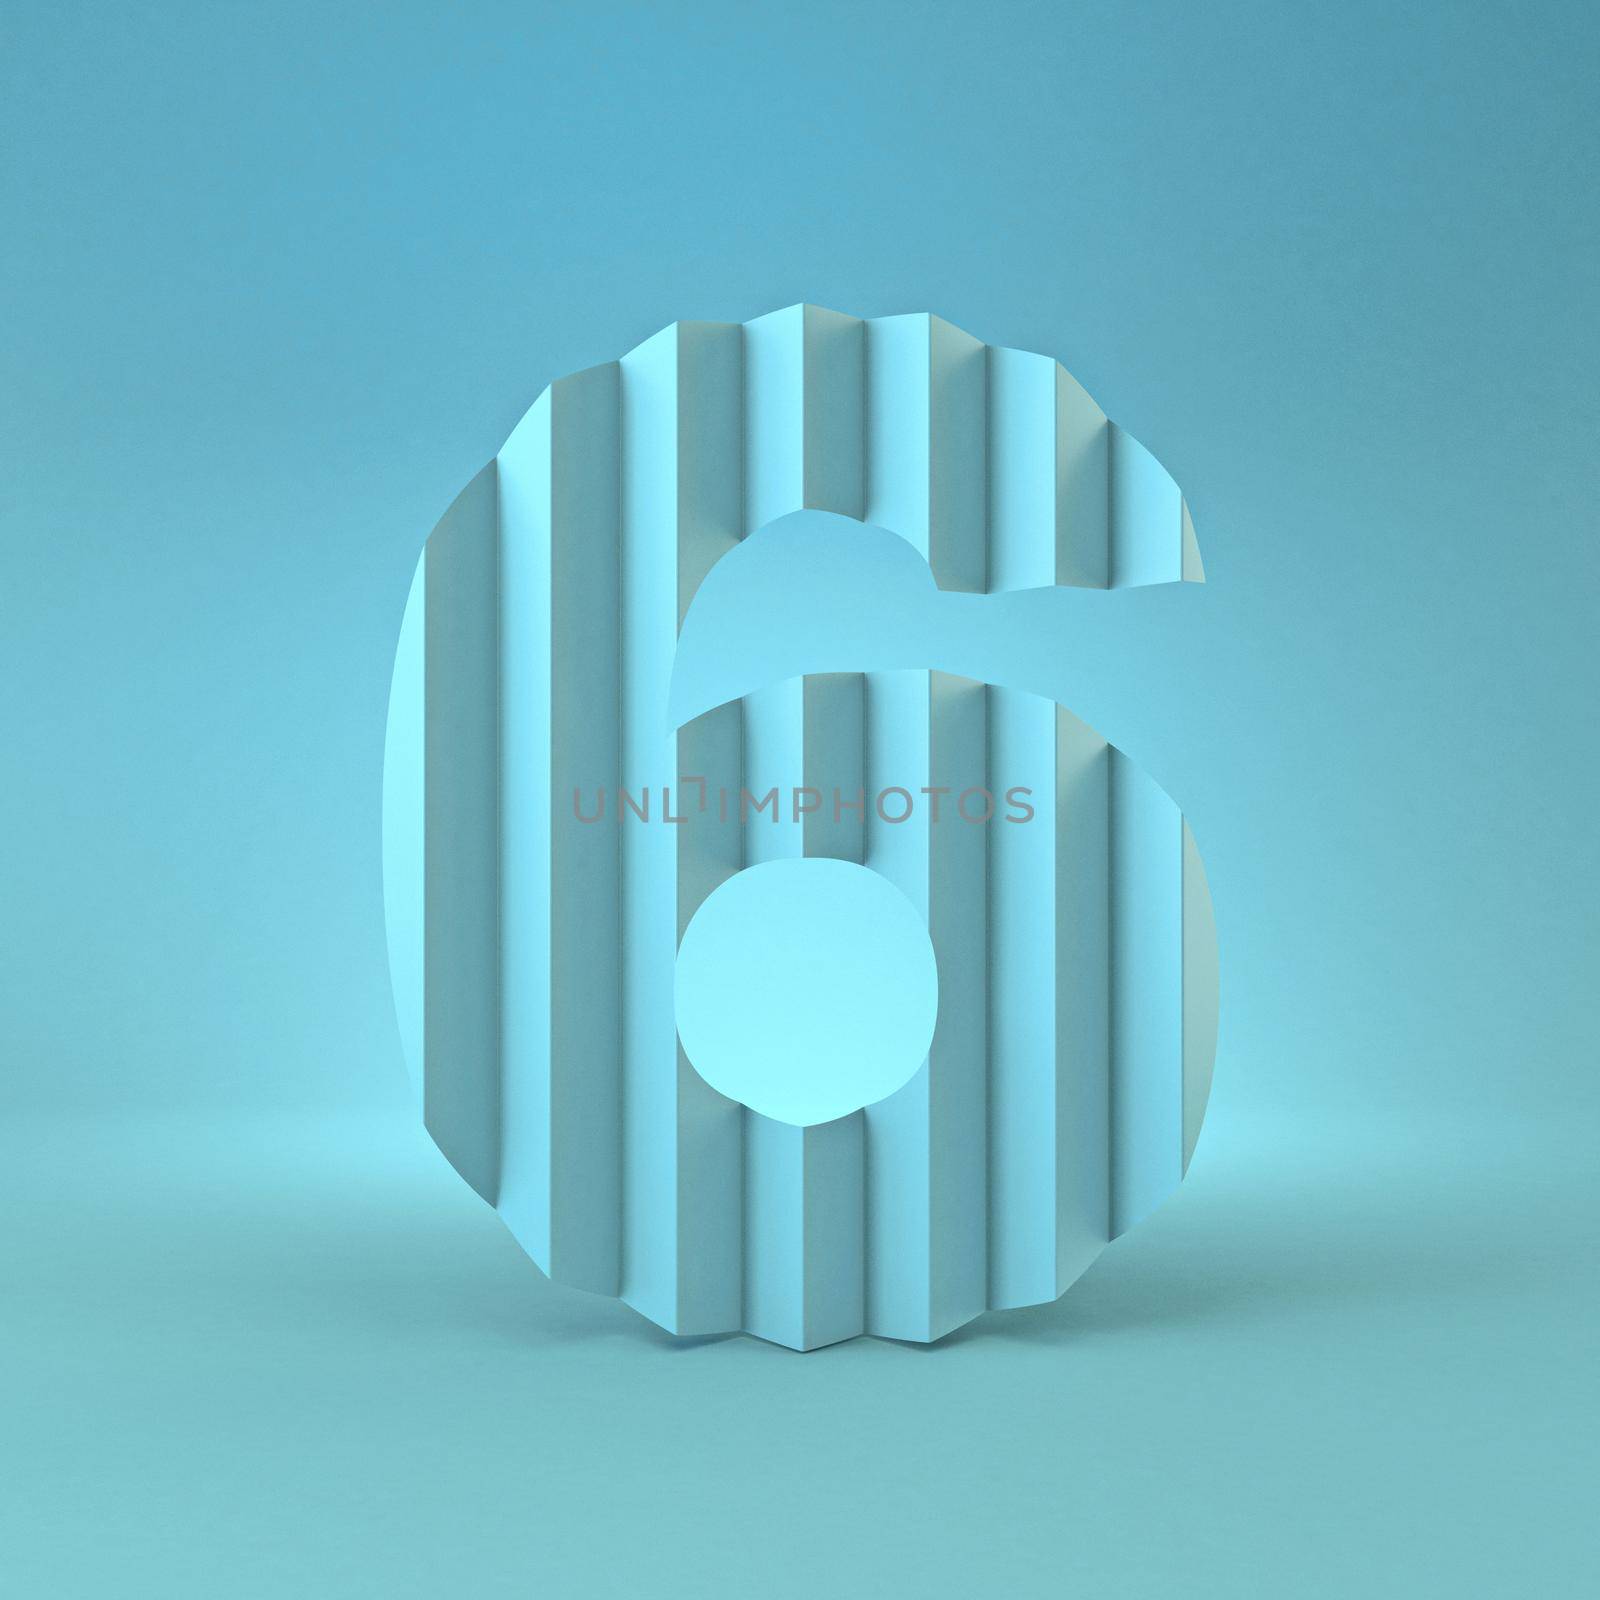 Cold blue font Number 6 SIX 3D render illustration on blue background